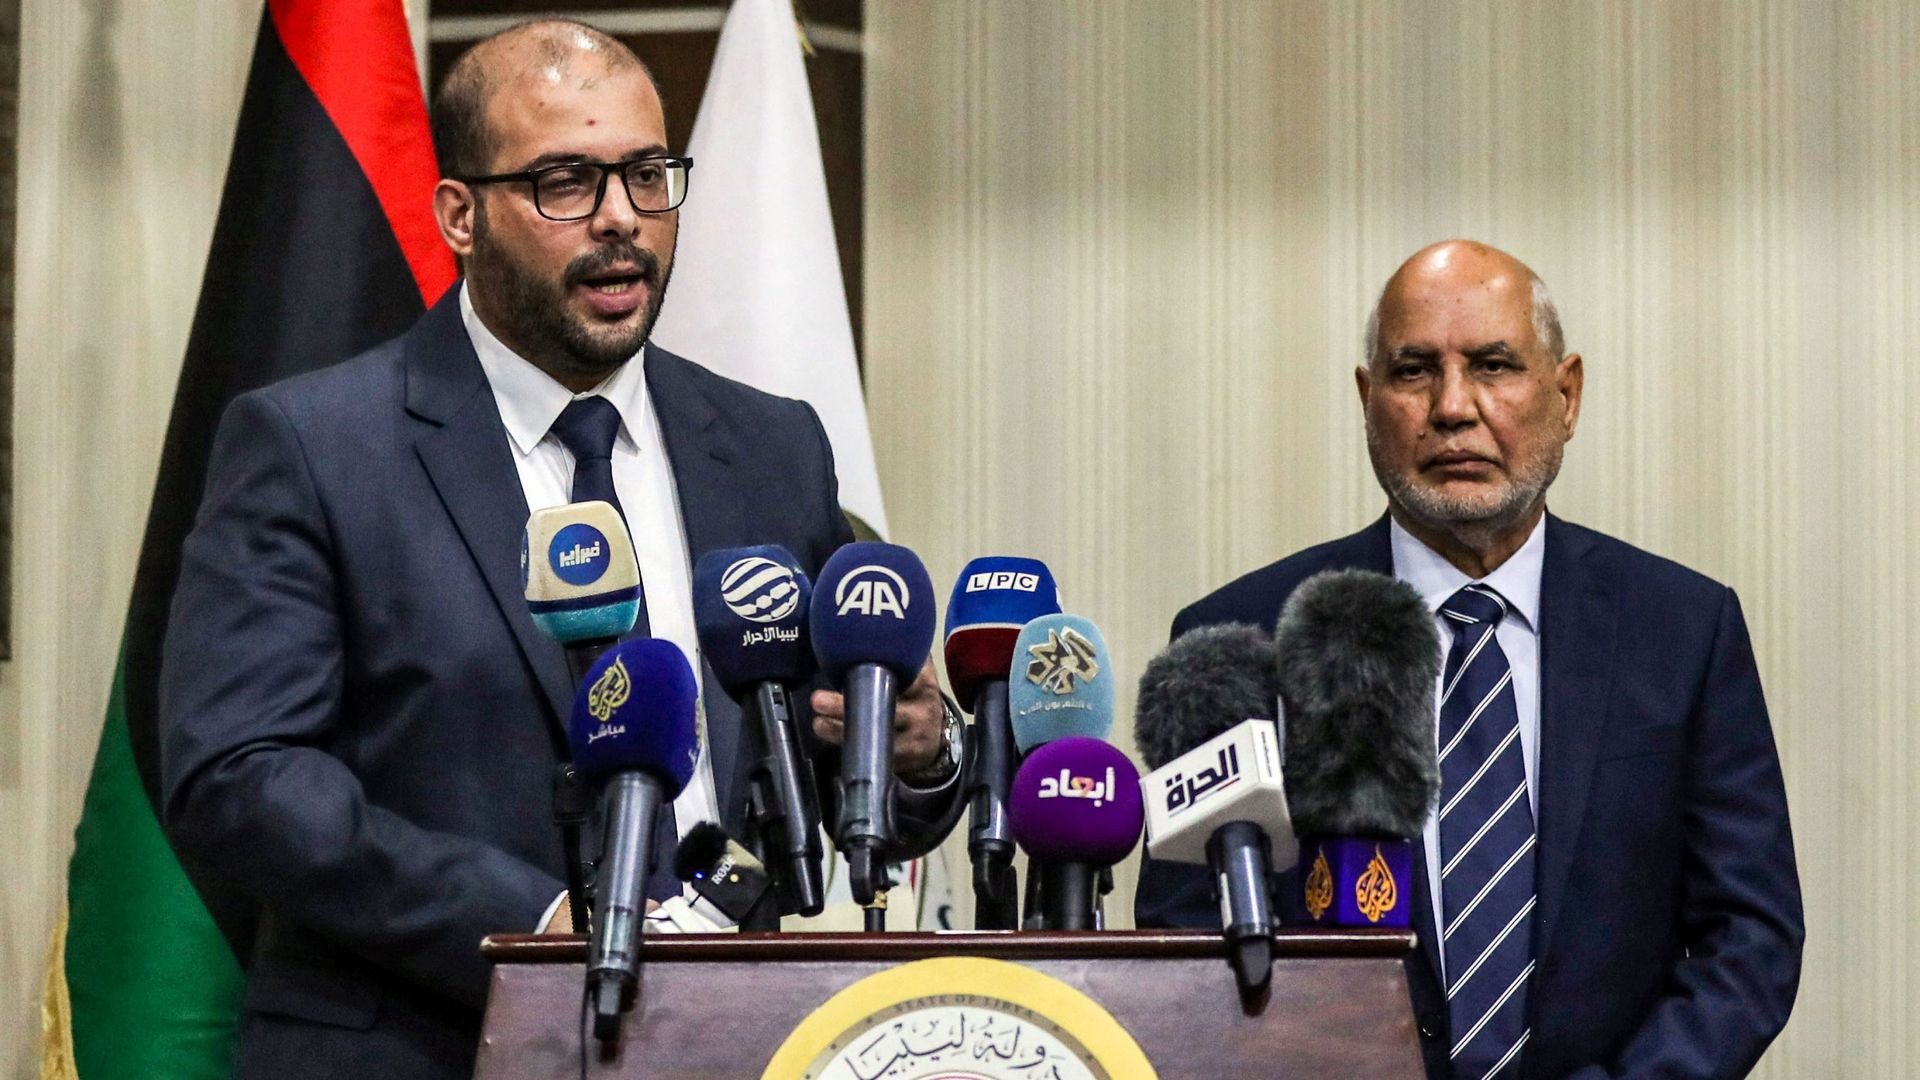 Omar Abdel-Aziz Bushah, vice-président du Conseil supérieur de l'État libyen, et le vice-président adjoint Mohammed Amzab donnent une conférence de presse sur les derniers développements avant les prochaines élections, à Tripoli, la capitale de la Libye, 